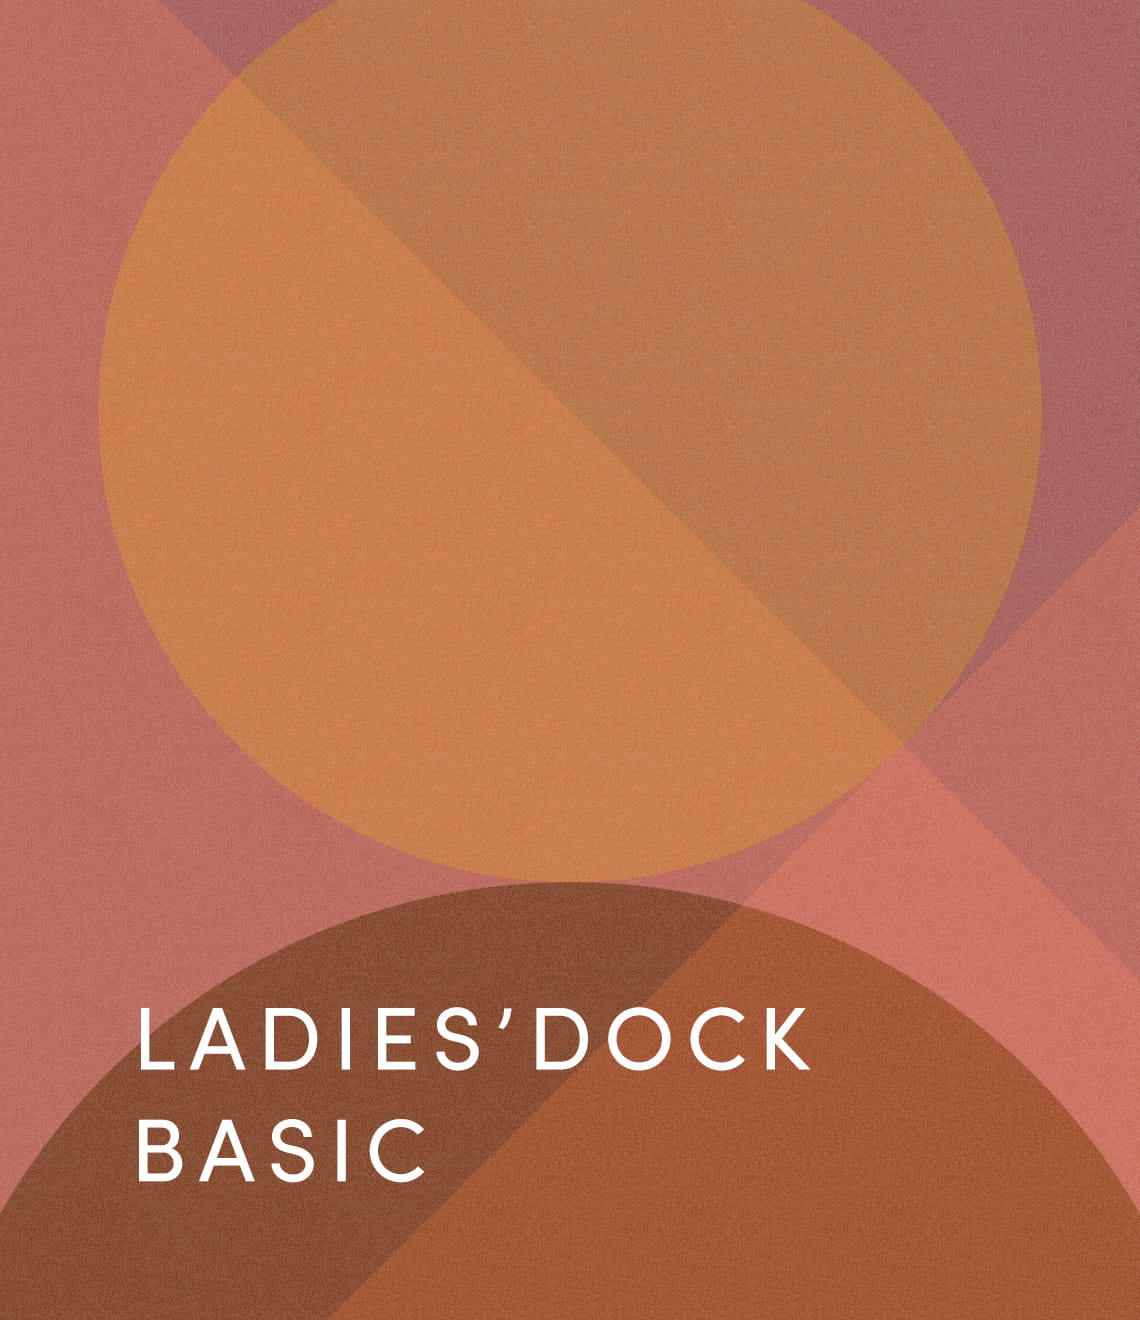 LADY’S DOCK BASIC